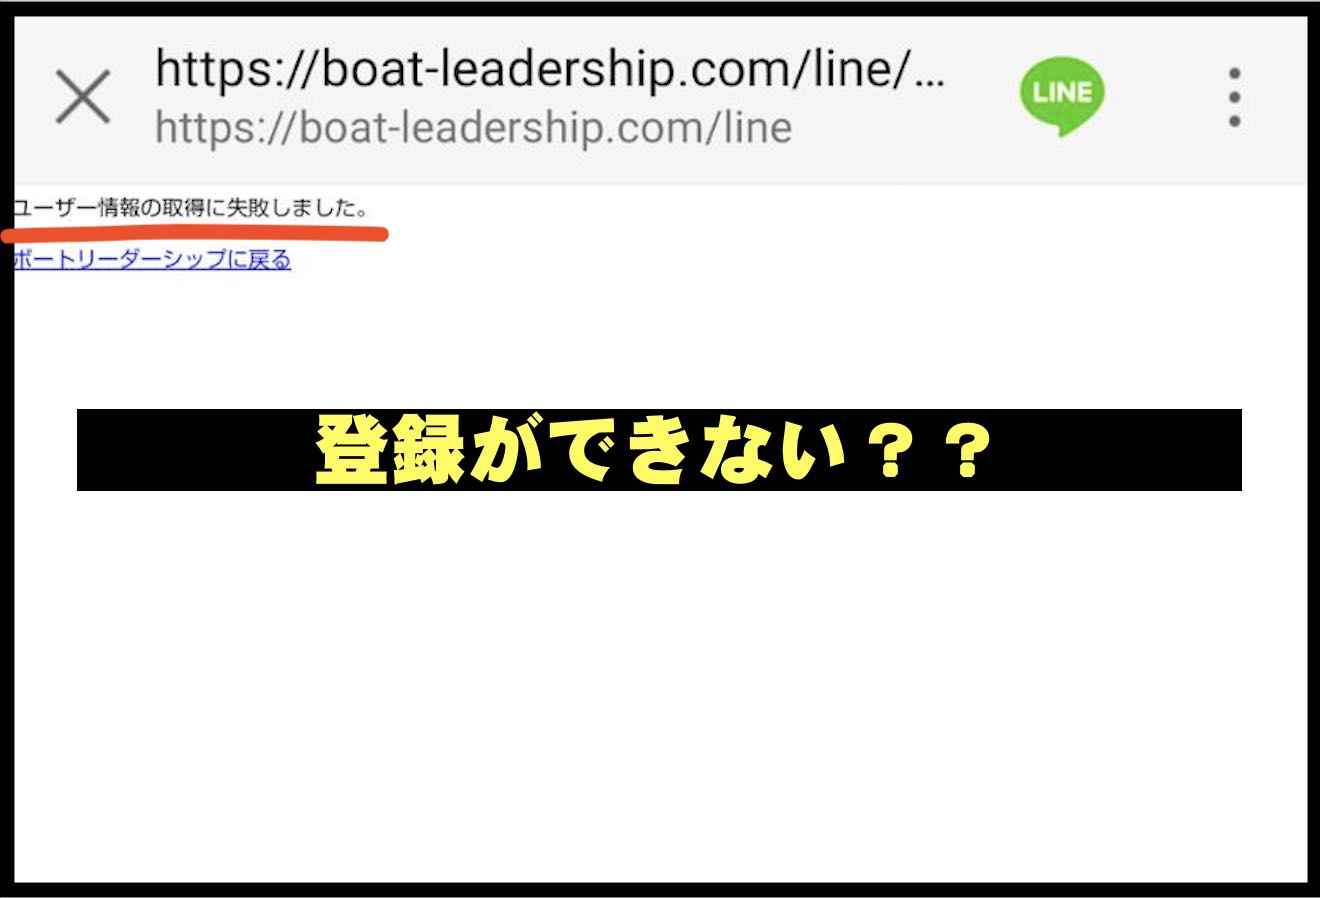 リーダーシップ(LEADERSHIP)という競艇予想サイトに登録できない